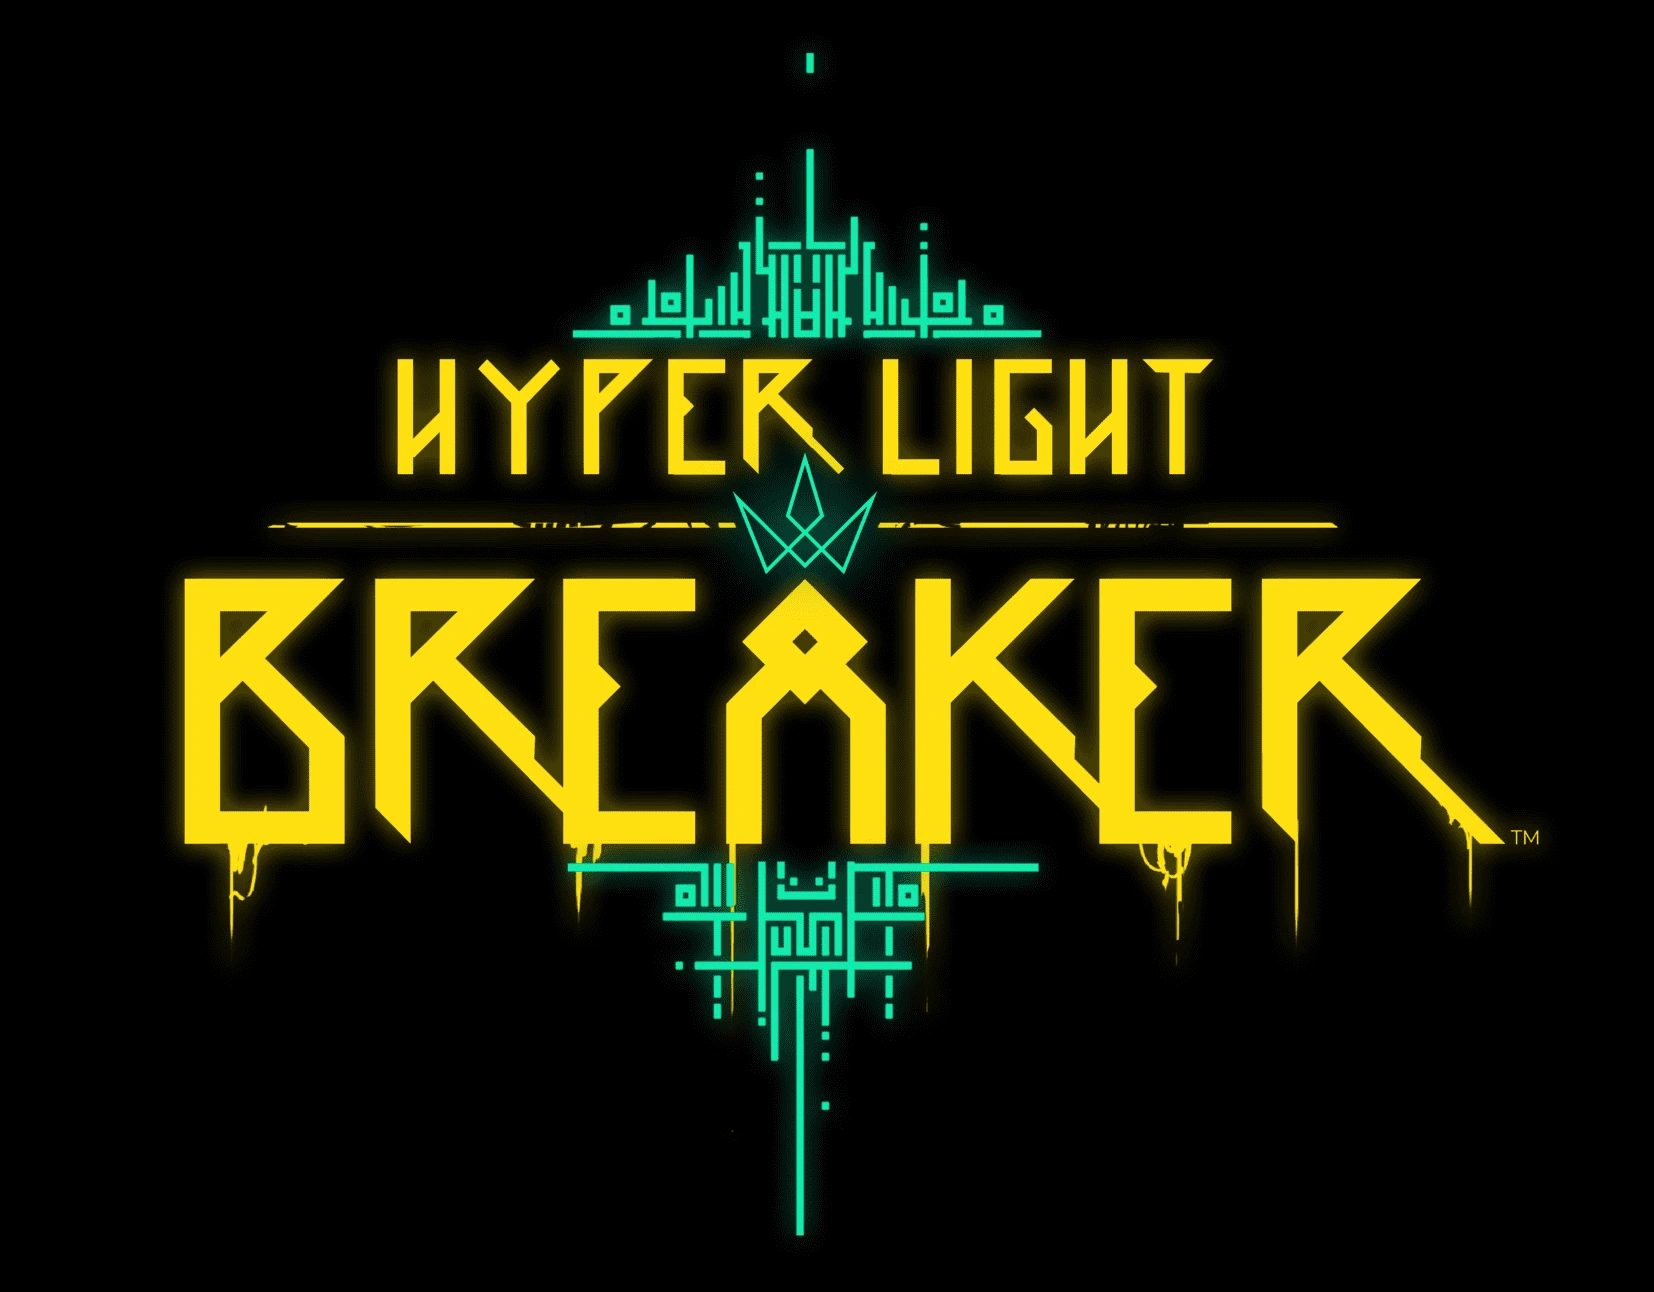 HyperLightBreaker